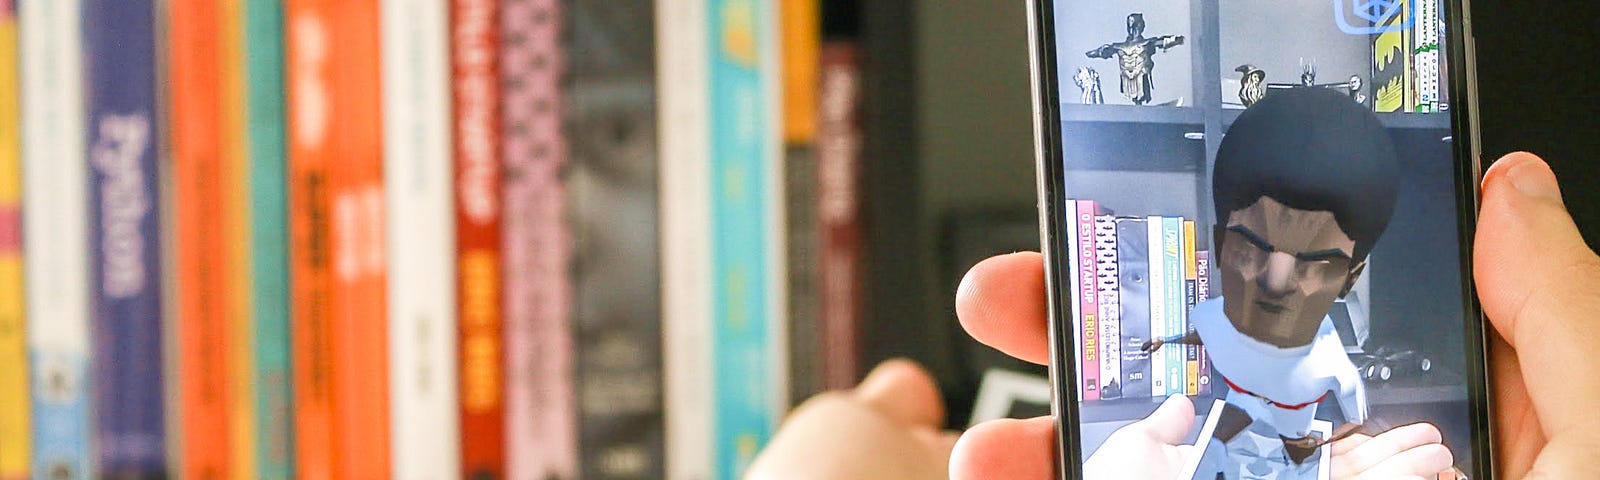 Tela de um smartphone em que aparece um papel e sobre ele um modelo 3D do jogador Ramon.